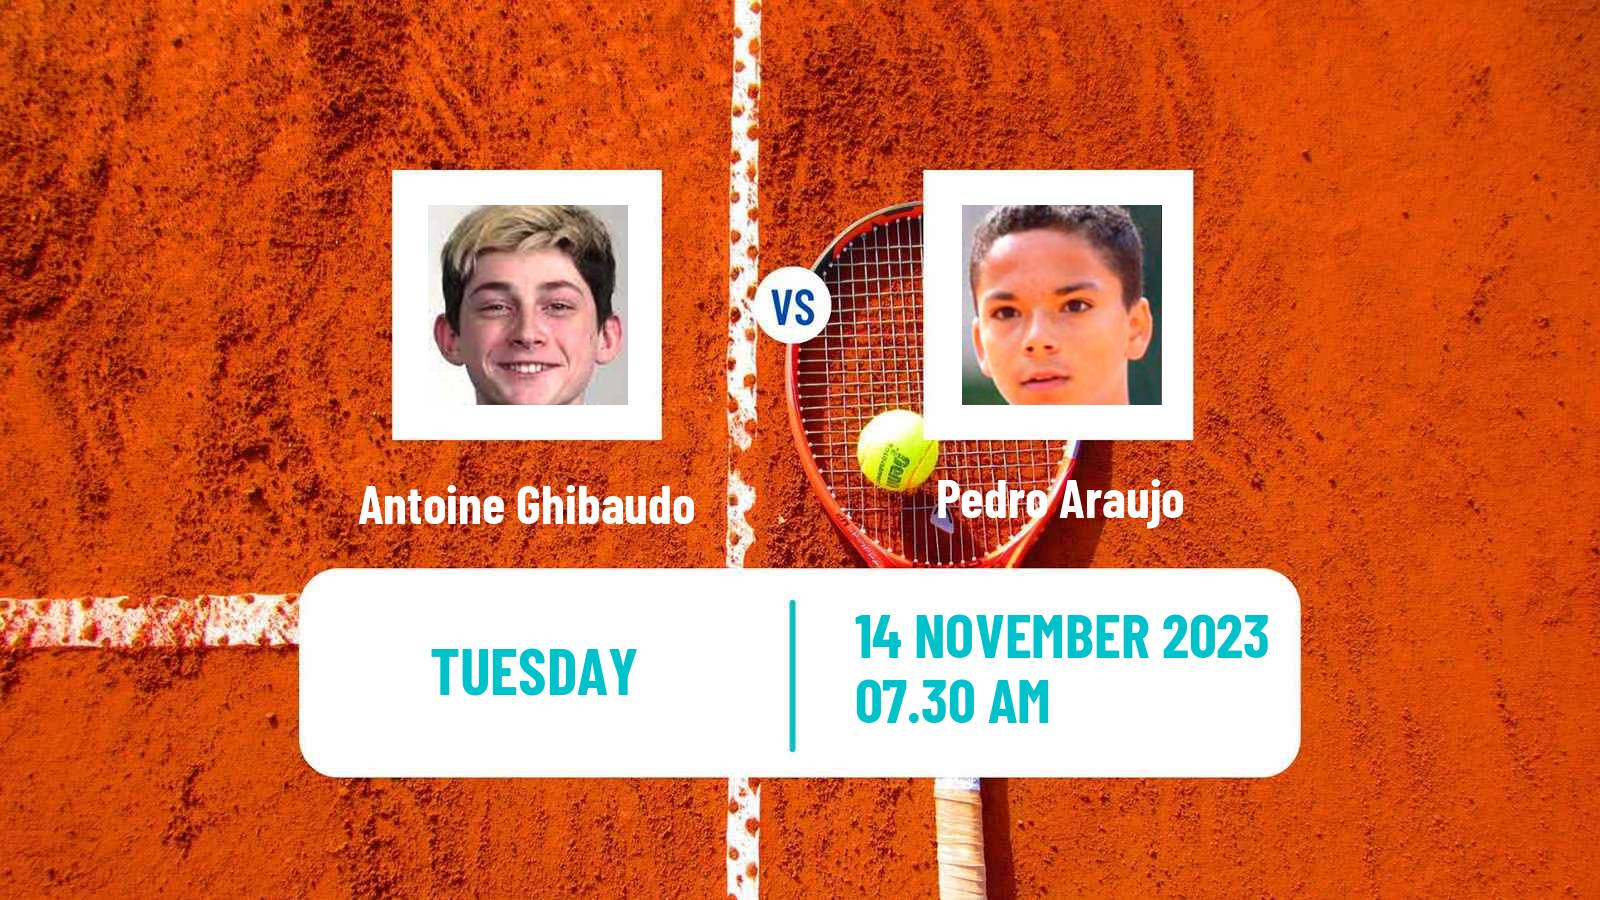 Tennis ITF M25 Vale Do Lobo Men 2023 Antoine Ghibaudo - Pedro Araujo